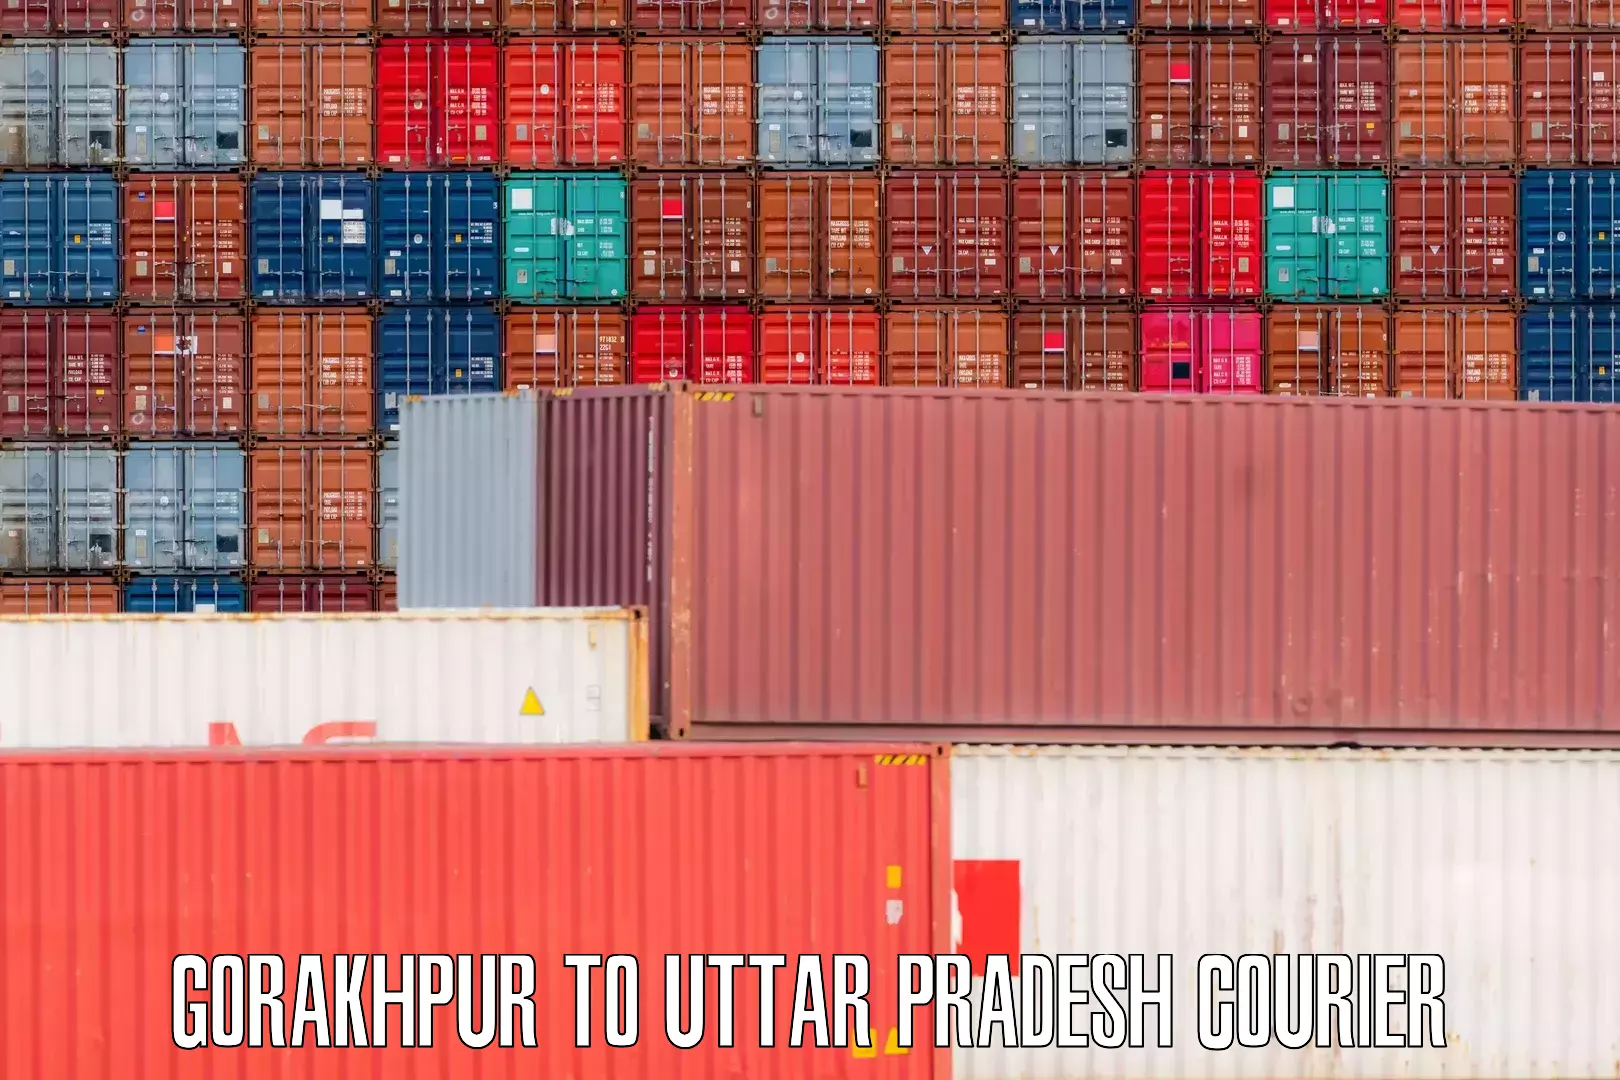 Baggage delivery technology Gorakhpur to Uttar Pradesh